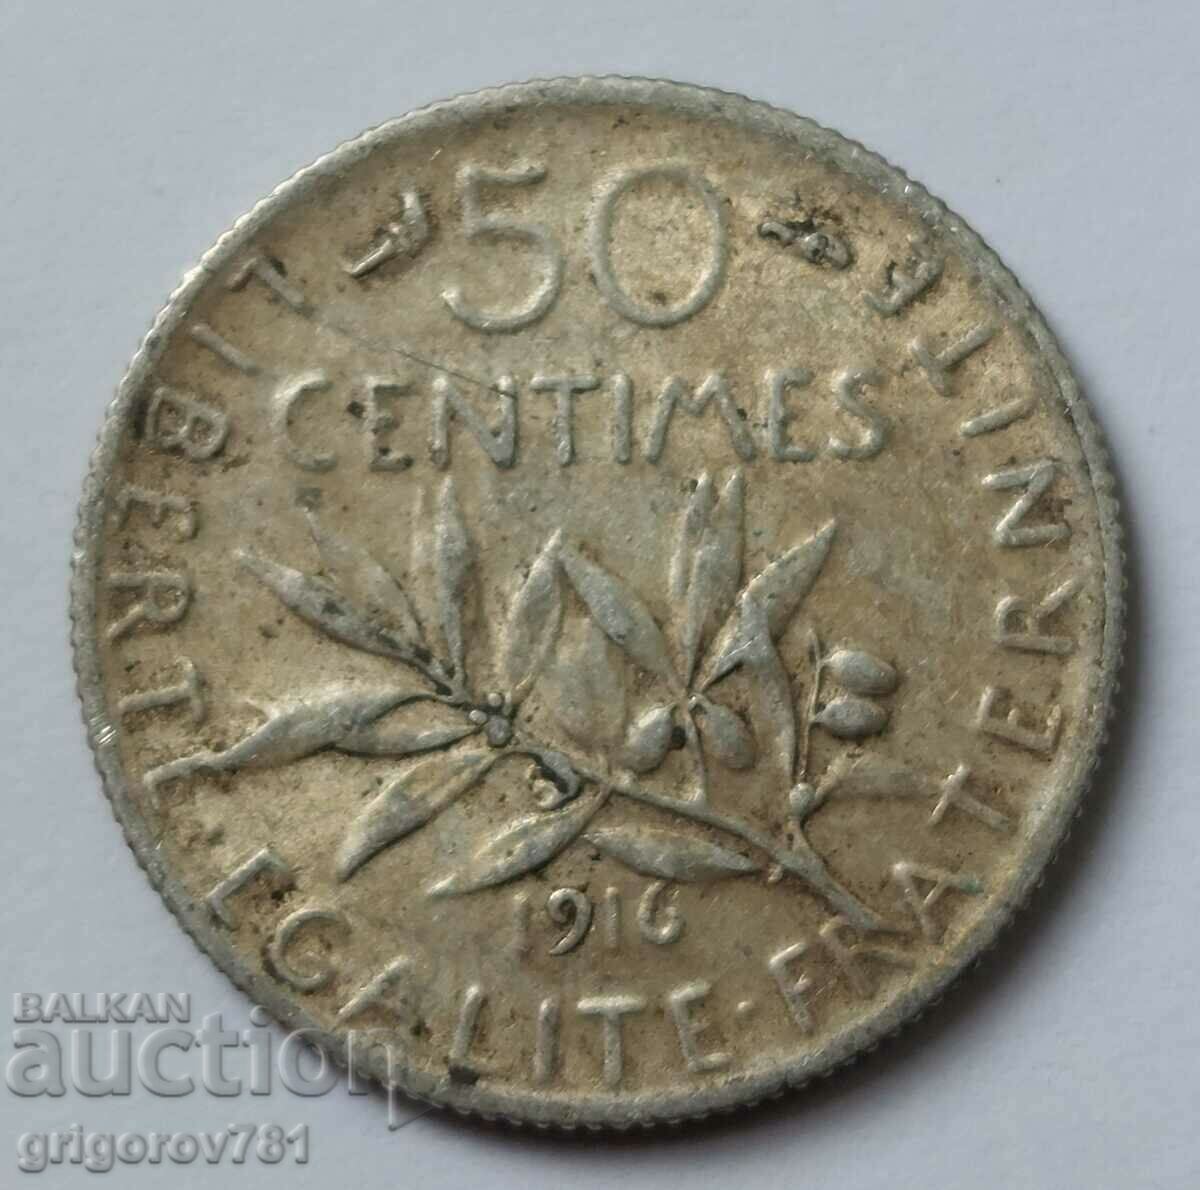 Ασημένιο 50 εκατοστά Γαλλία 1916 - ασημένιο νόμισμα №4